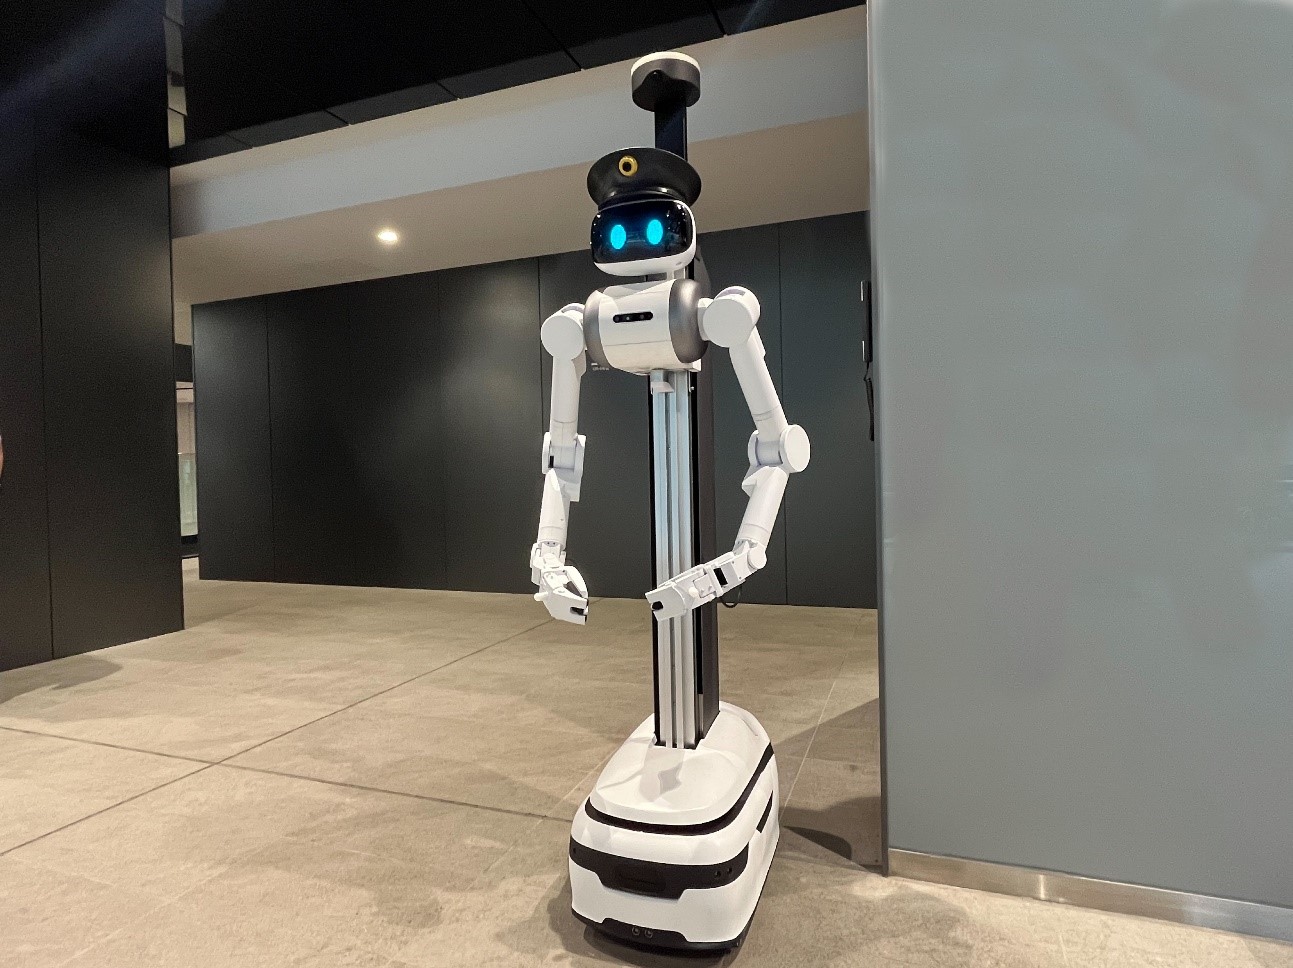 アバター警備ロボット「ugo」早稲田大学リサーチイノベーションセンターで実証実験を実施